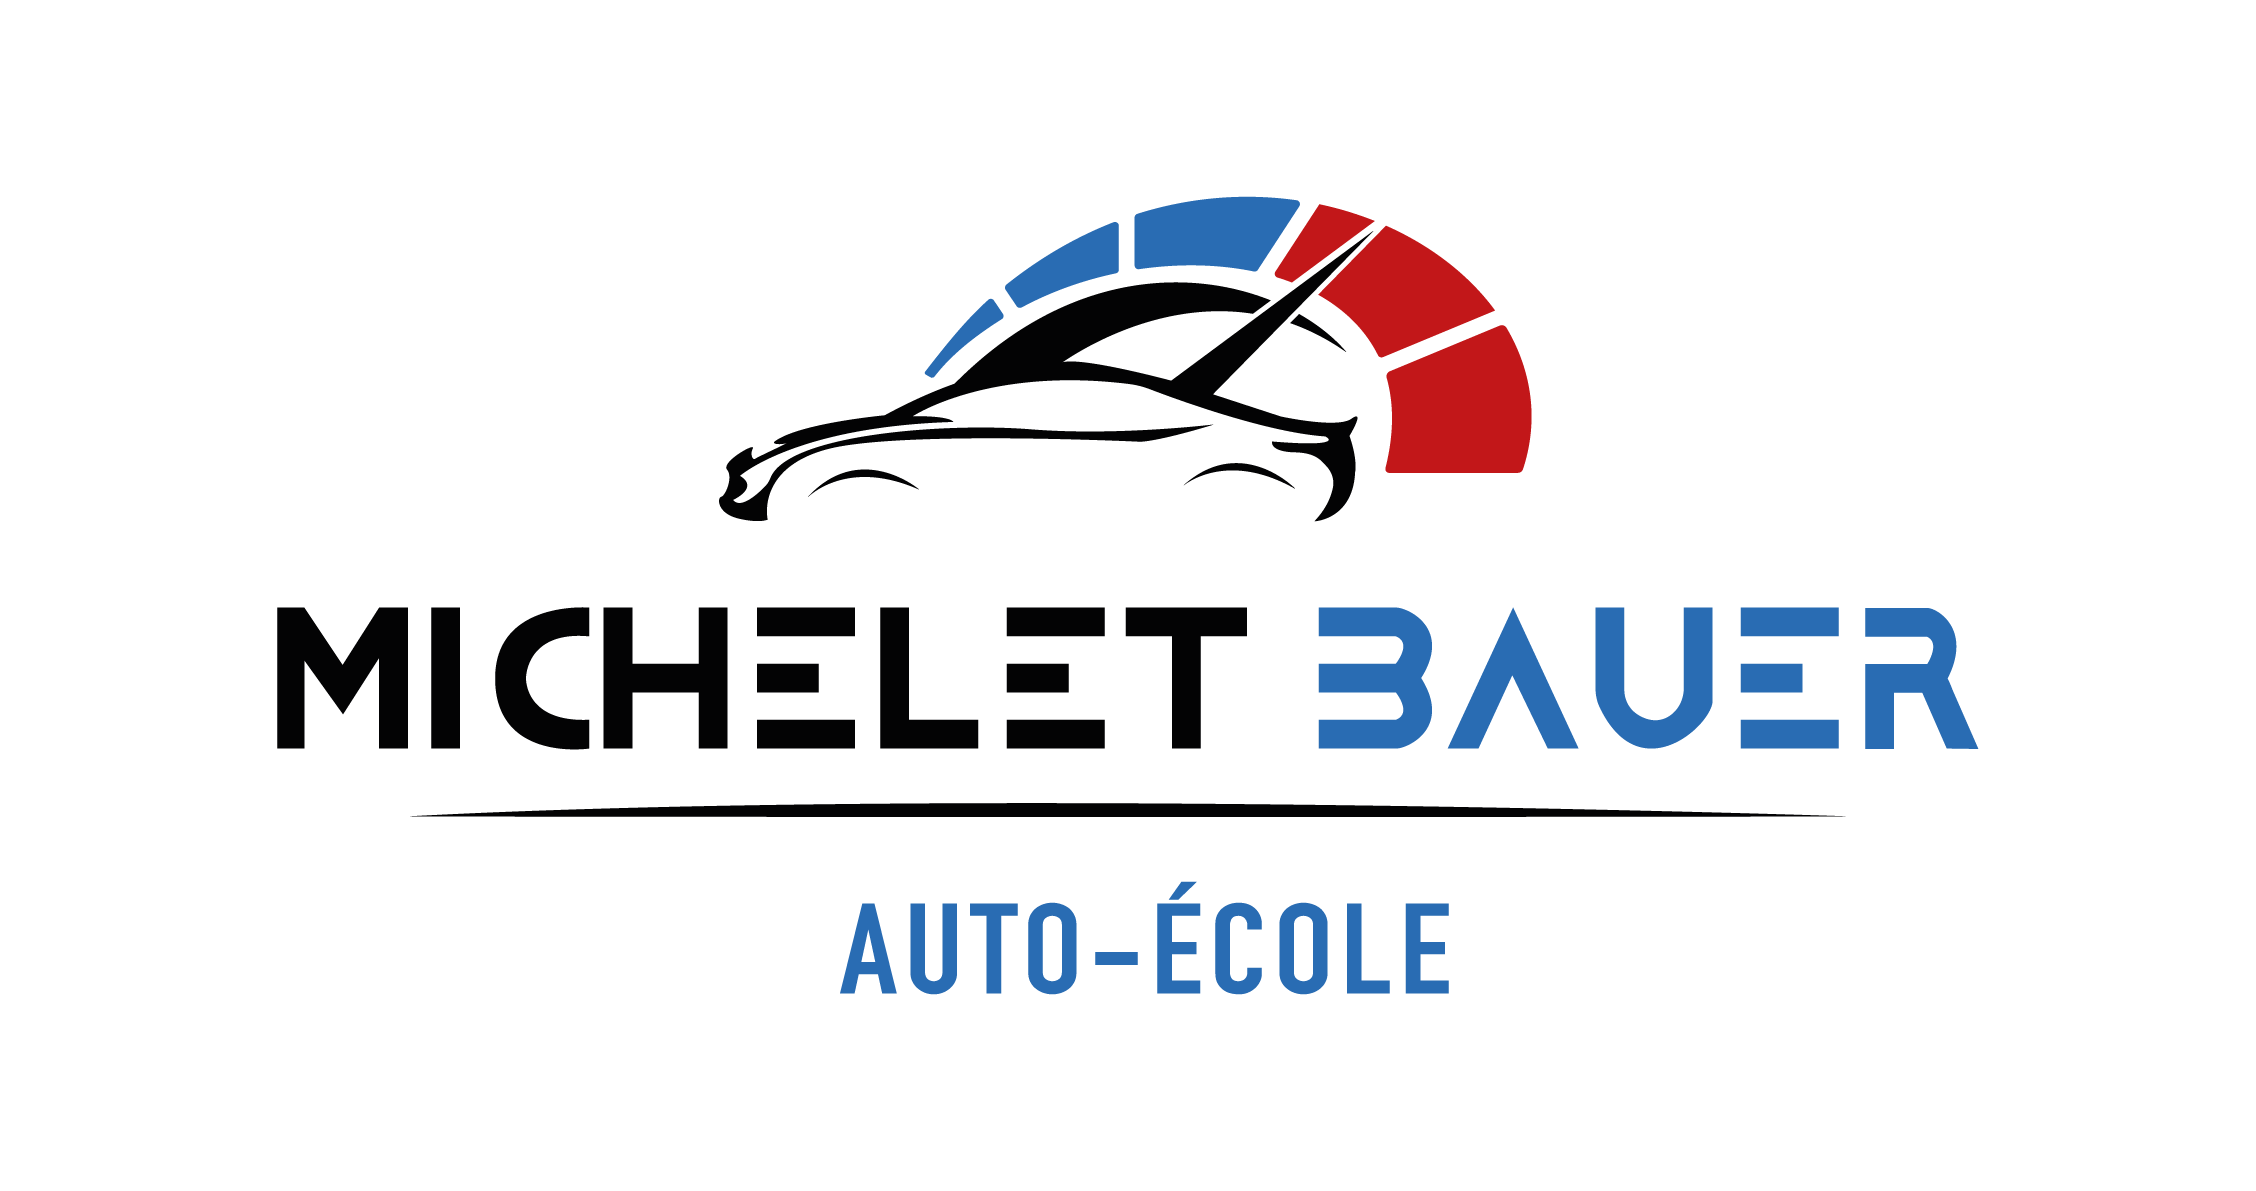 Auto-école Michelet Bauer